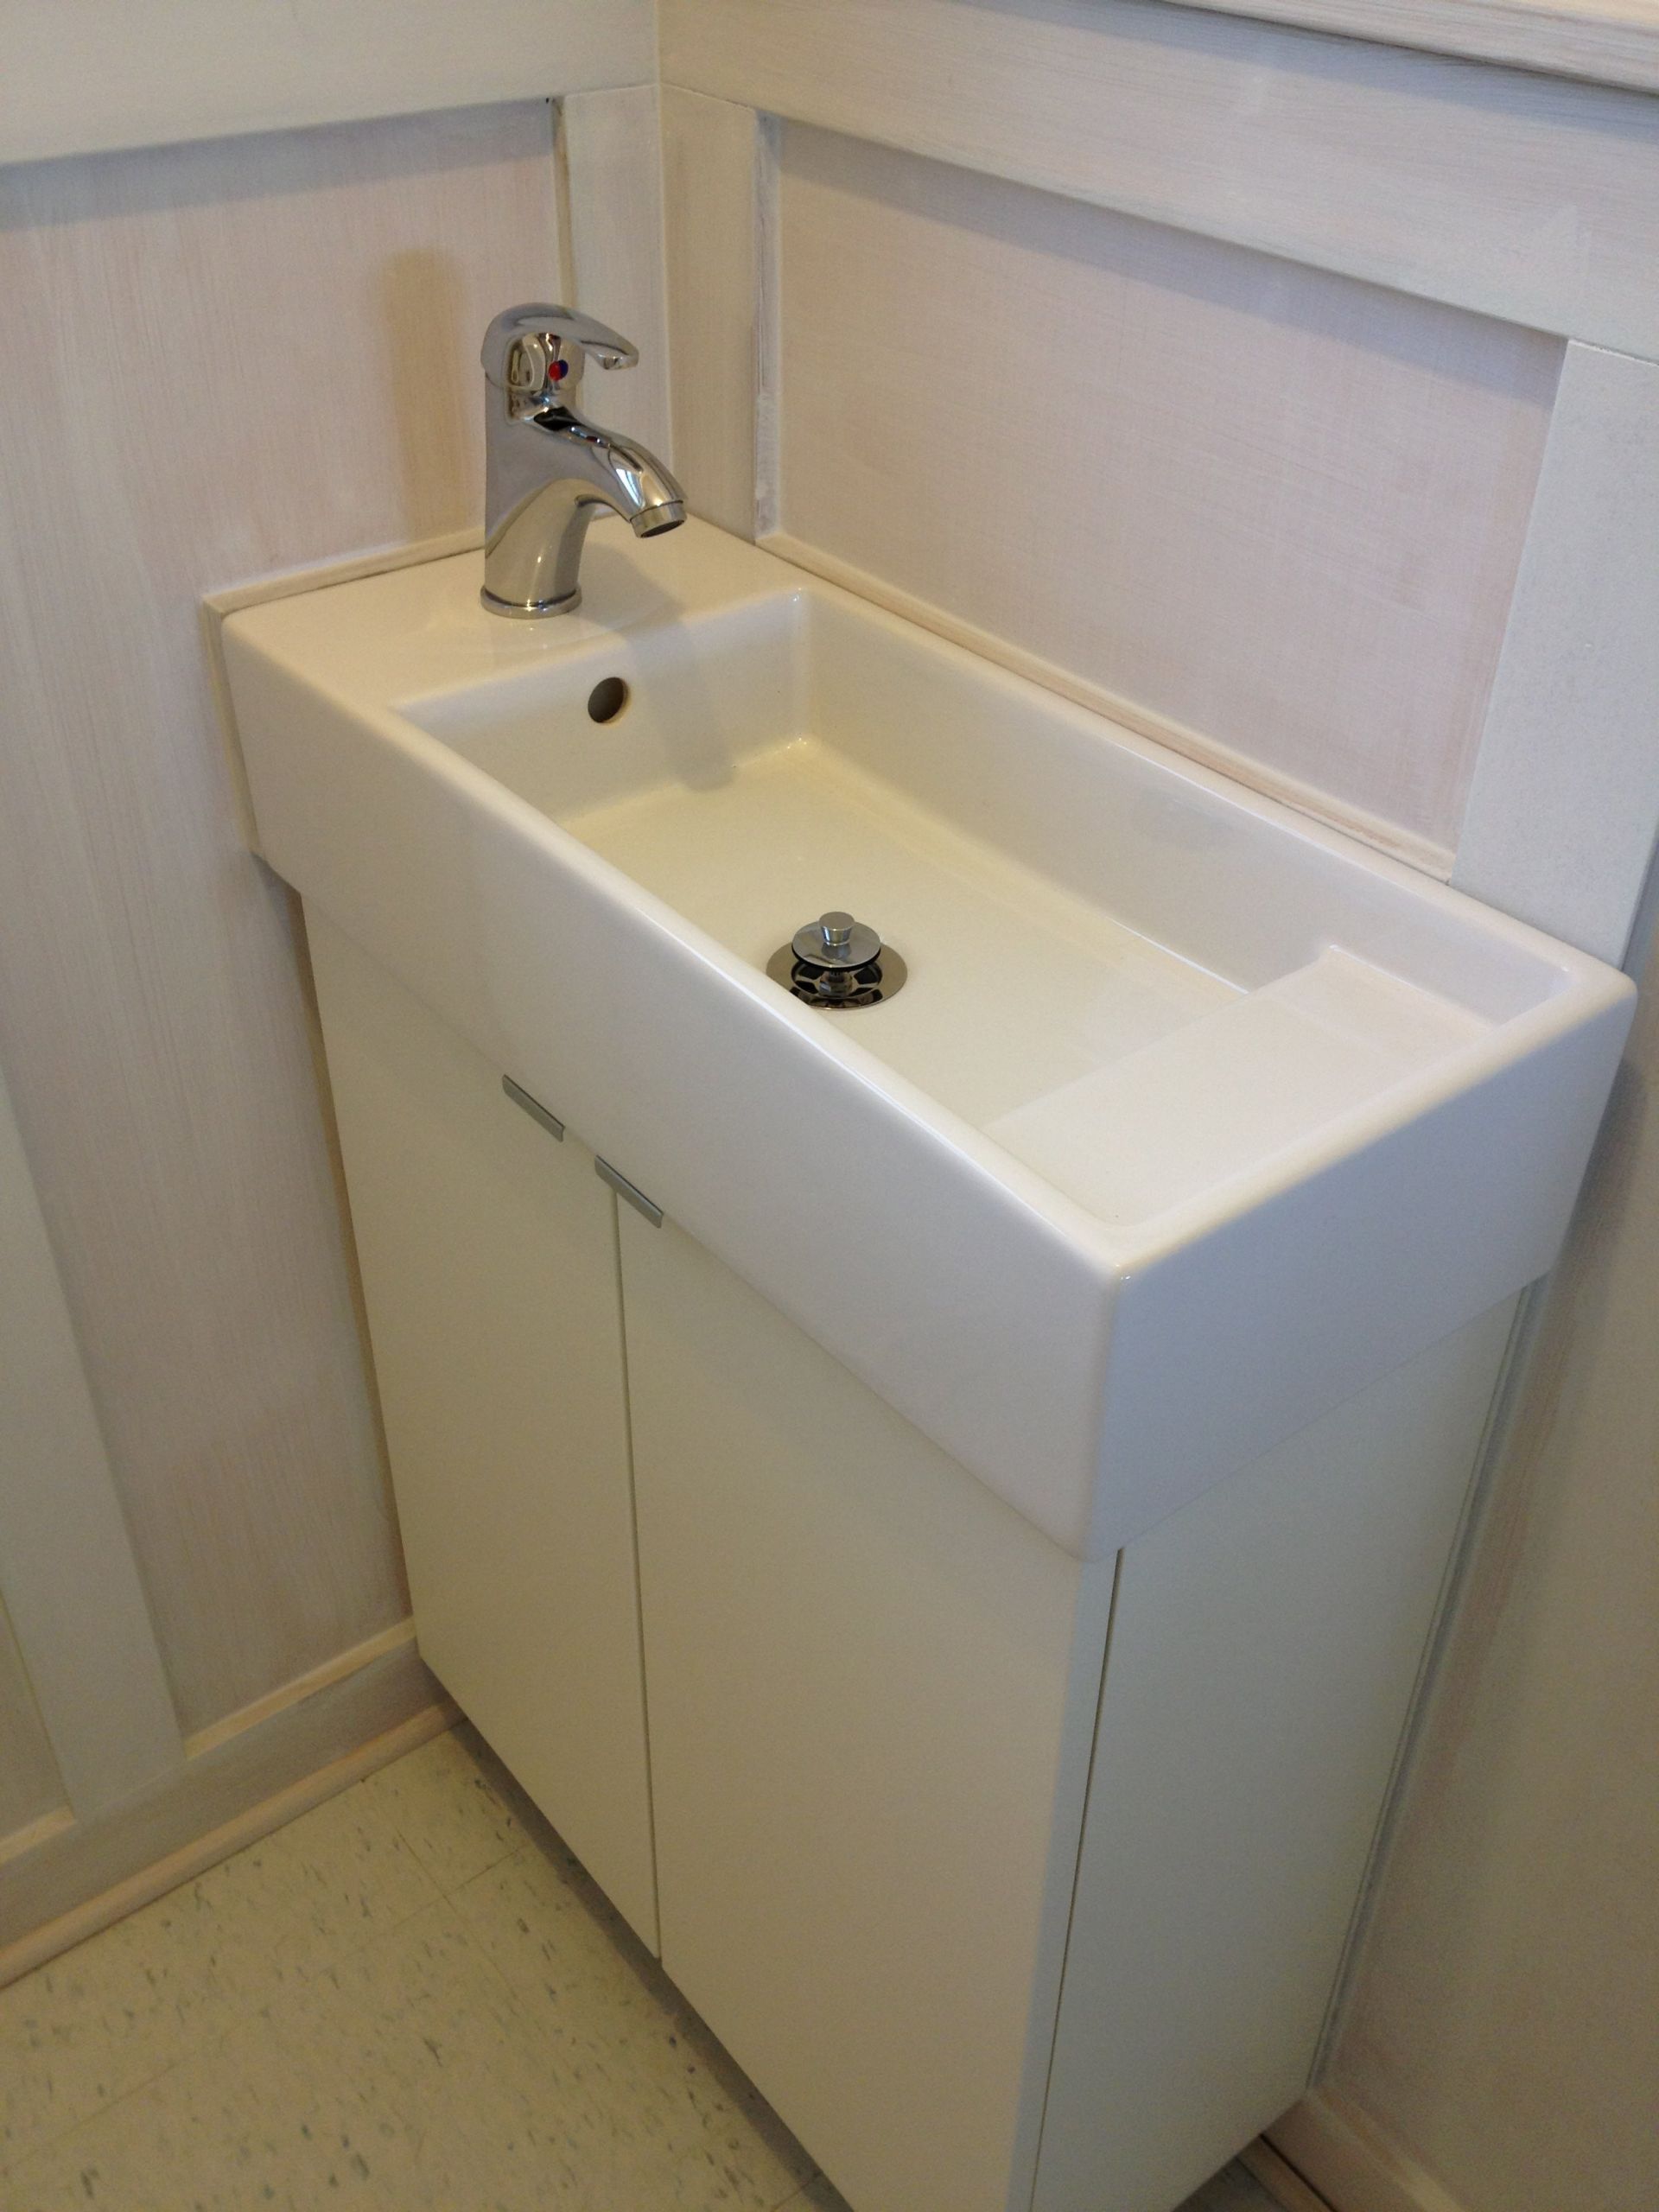 Ikea Bathroom Sink
 Lillangen Sink from Ikea with Krakskar faucet WNY Handyman